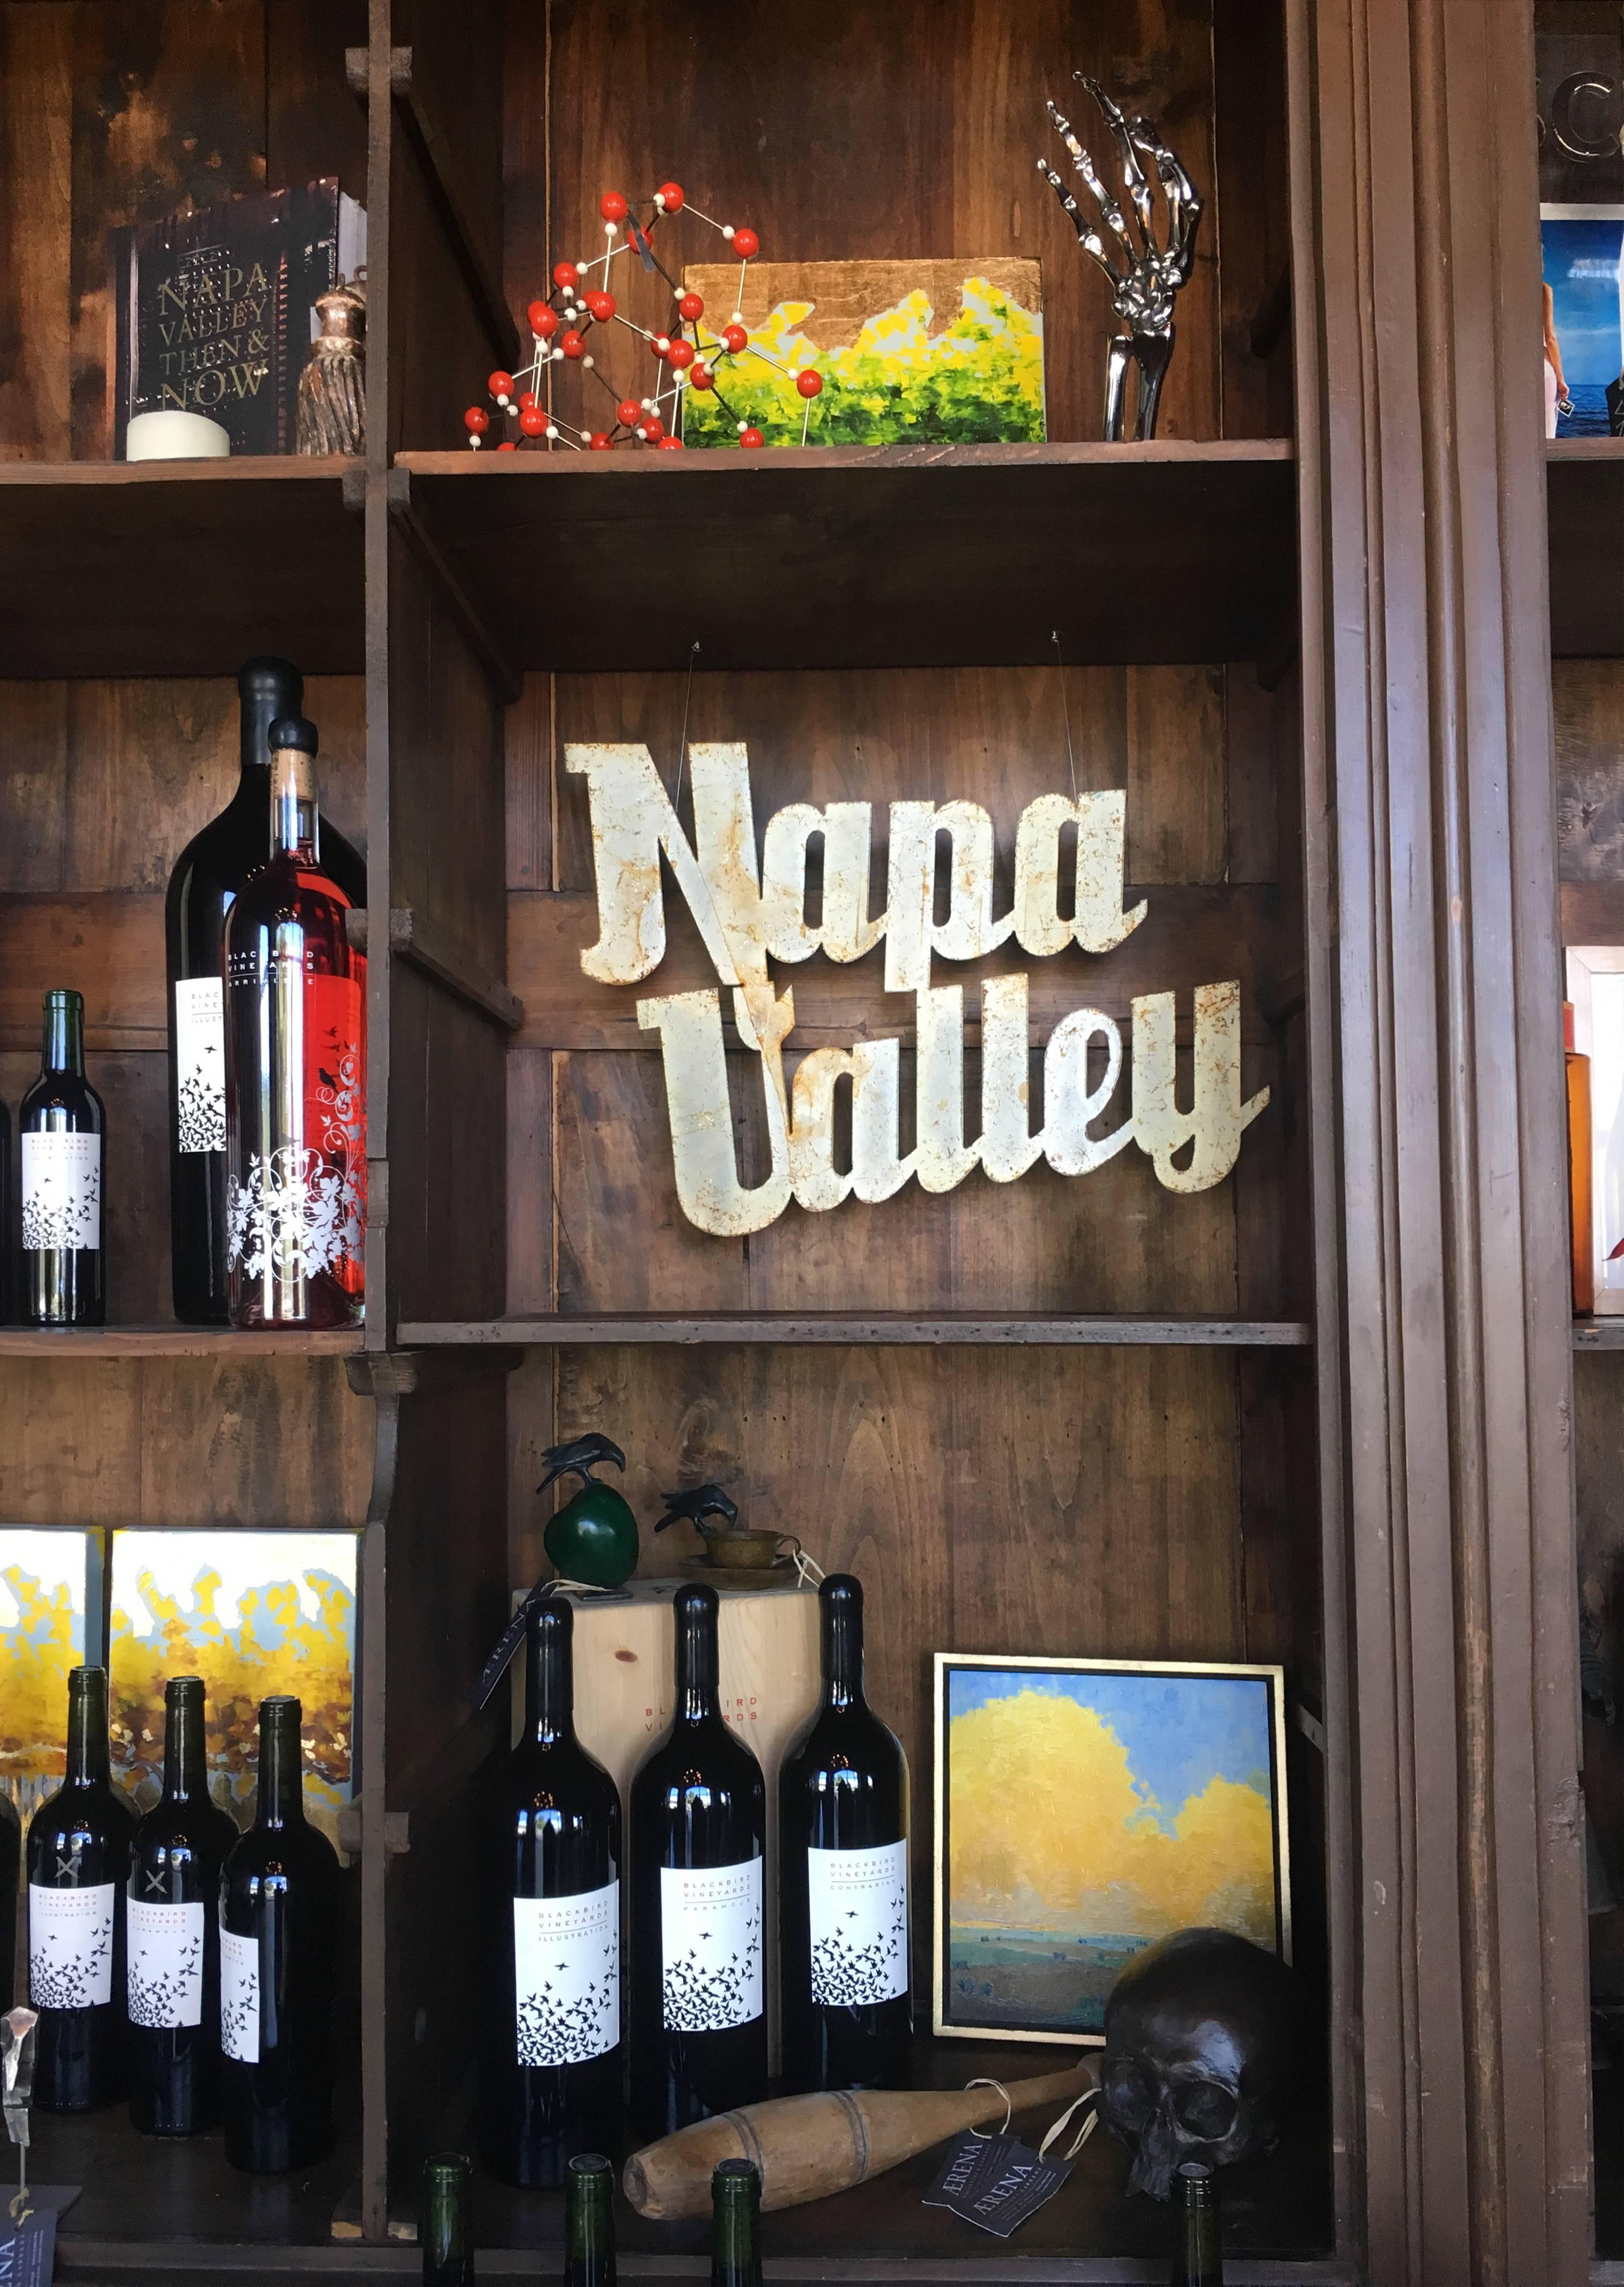 Vintage gemalt Napa Valley Zeichen perfekt für Weinkeller oder Weinland Dekor. 

Das Schild ist aus cremefarben lackiertem Blech mit Patina und Abnutzungserscheinungen; bitte sehen Sie sich die Bilder an, um einen genaueren Blick auf die